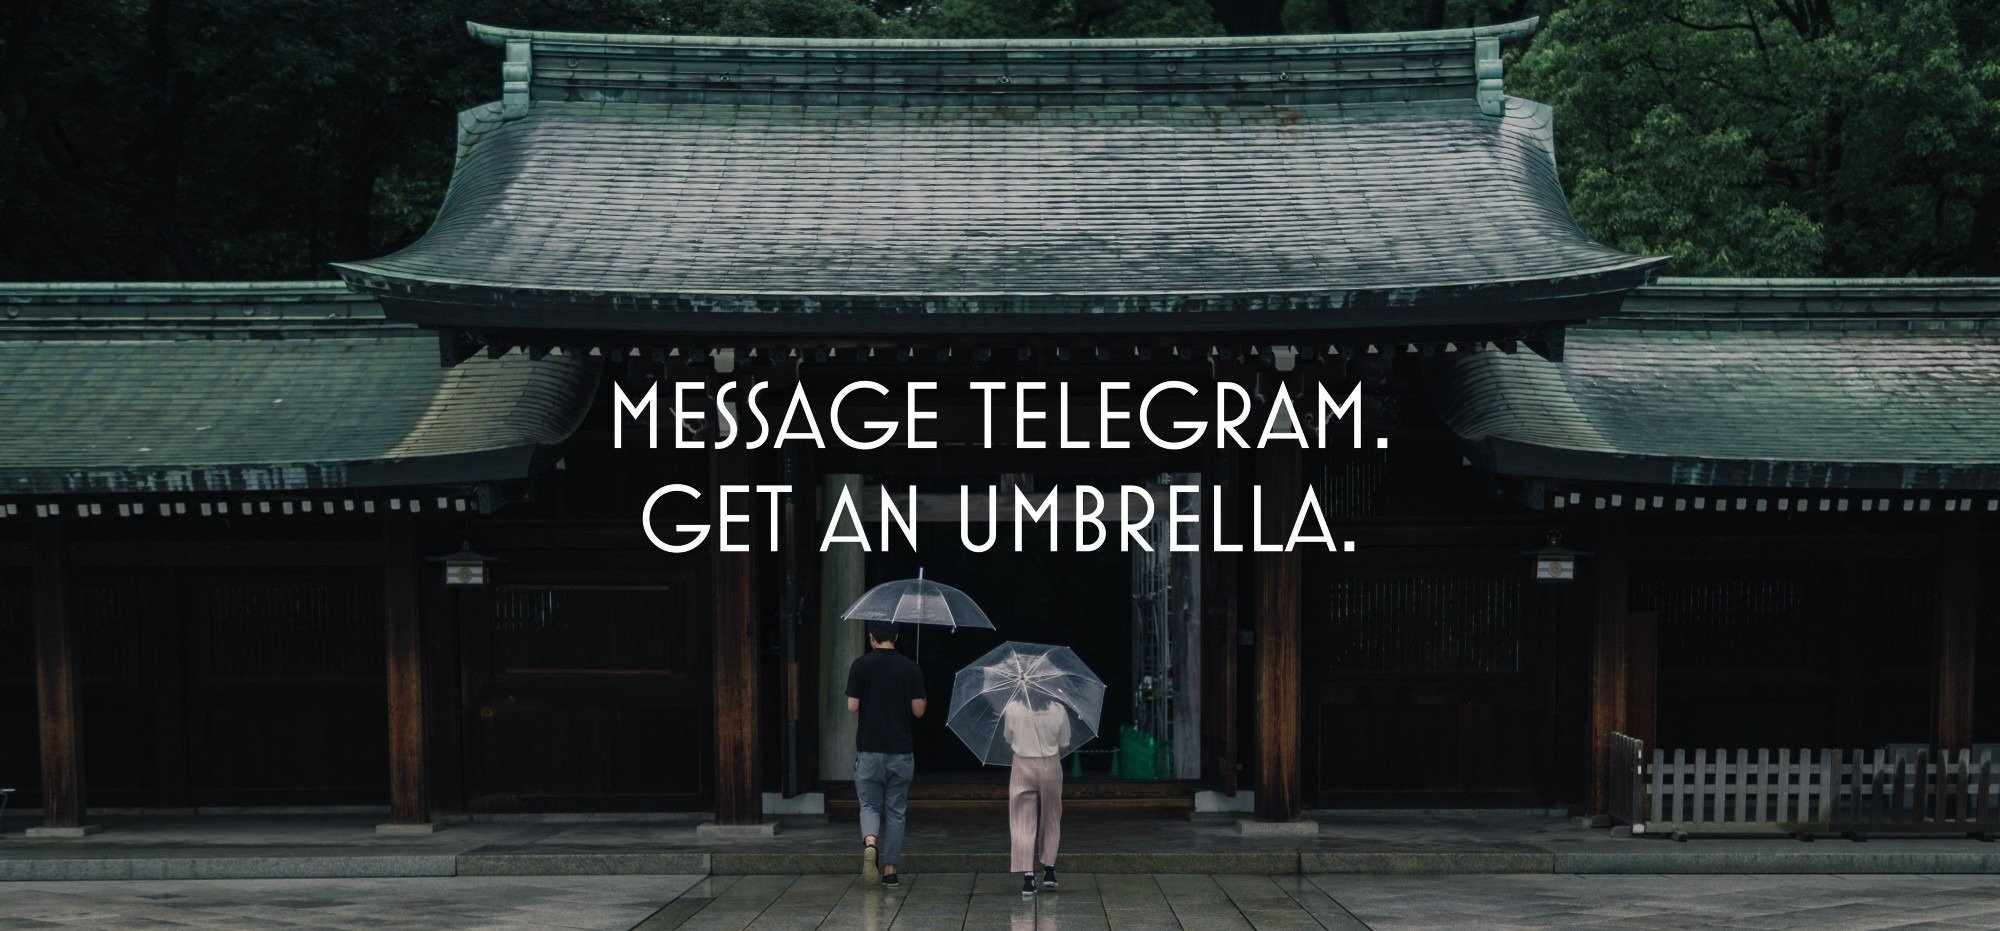 Get in umbrella